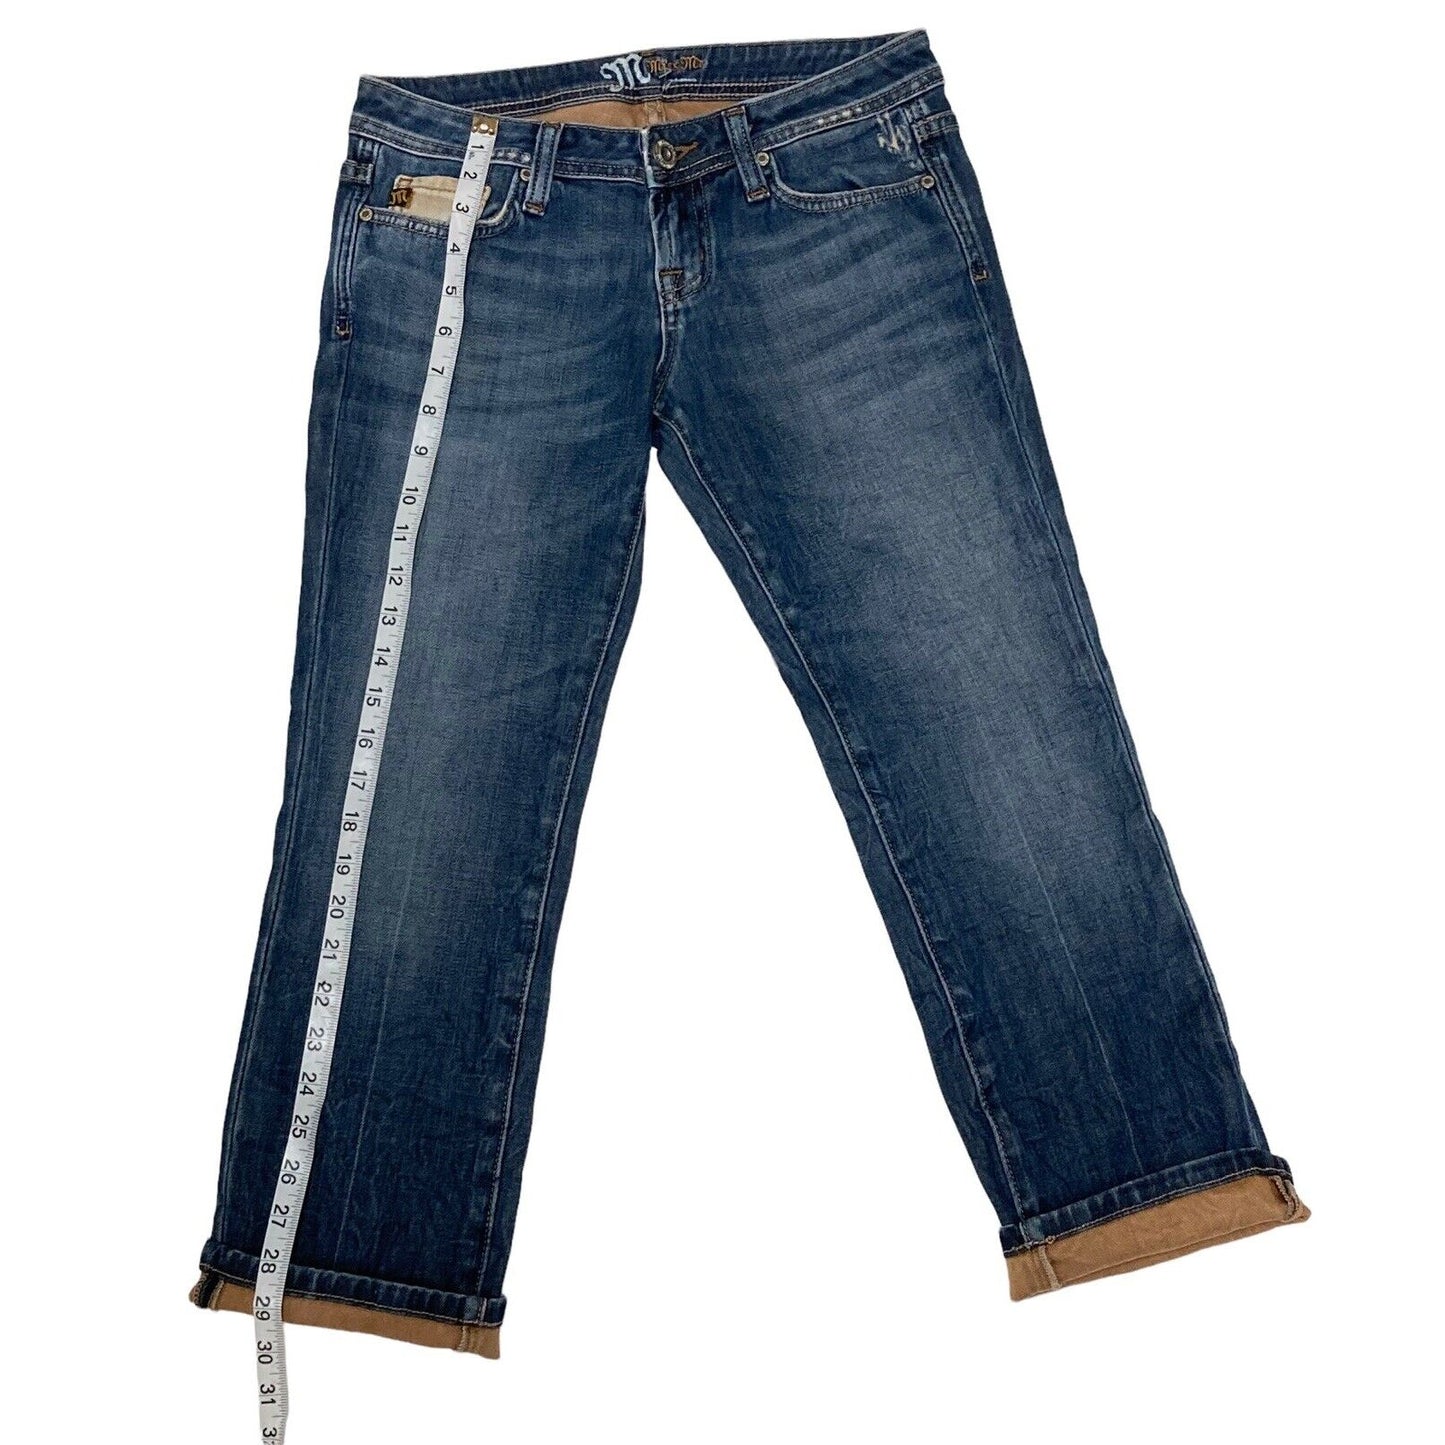 Miss Me JP45078 Capri Cropped Denim Jeans Odessa 02 Tan Cuffs Size 26